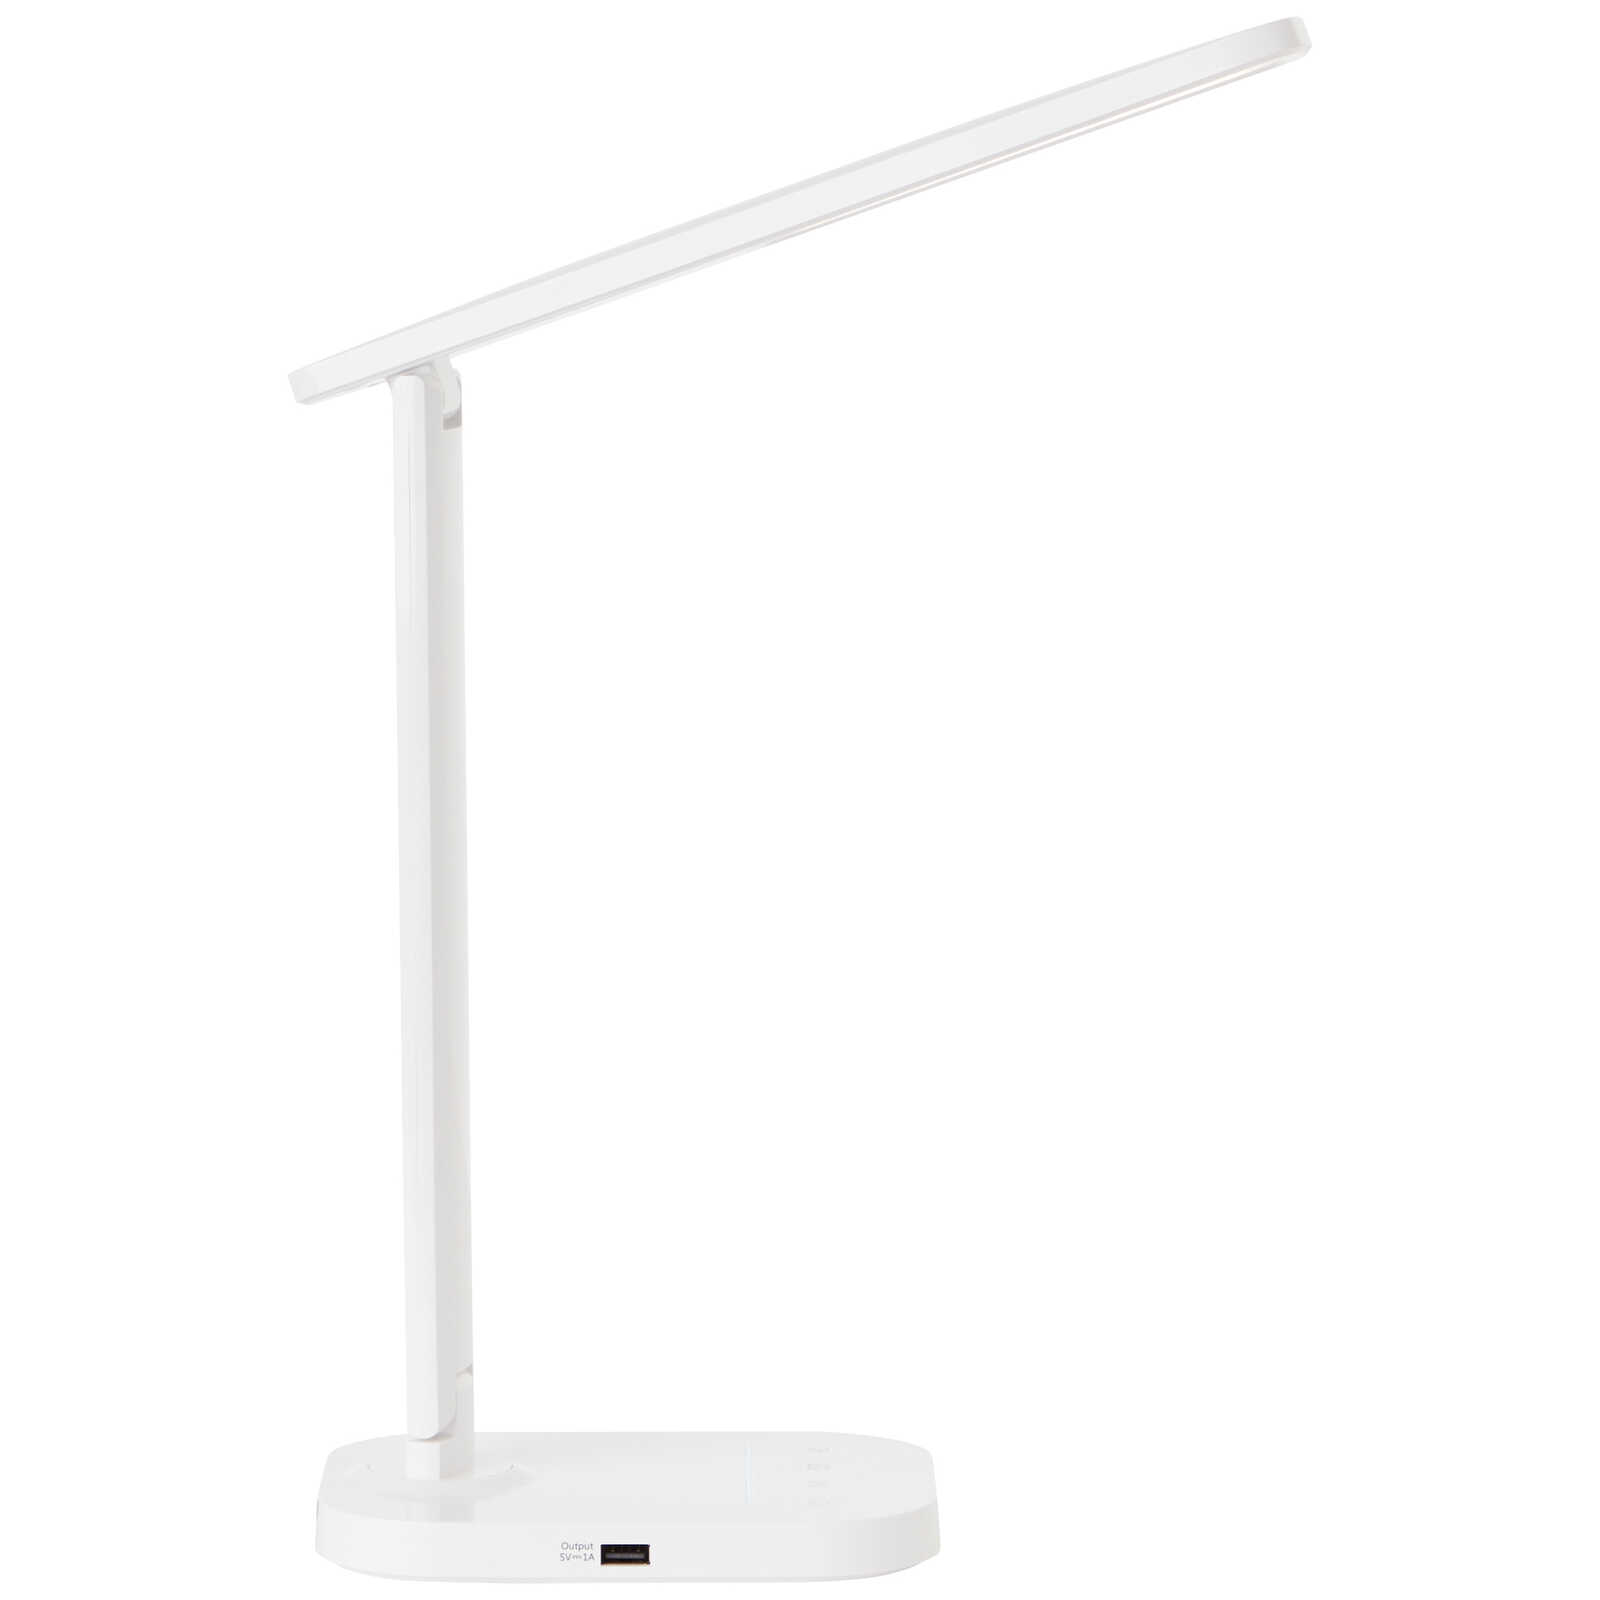             Lampe de table en plastique - Tabea 1 - Blanc
        